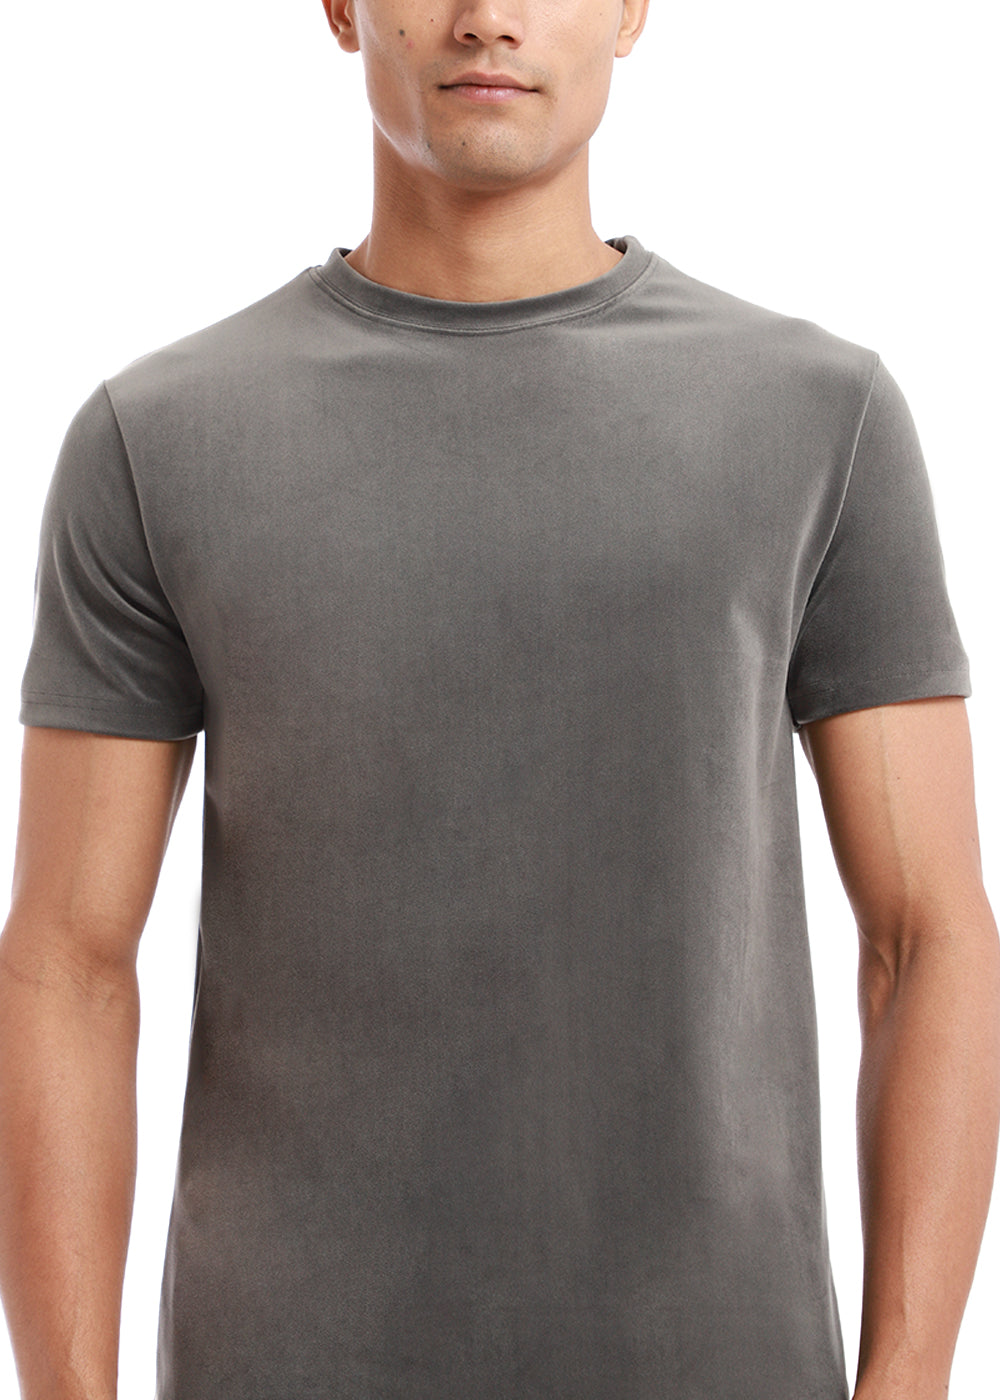 Glacier Gray Suede T-shirt